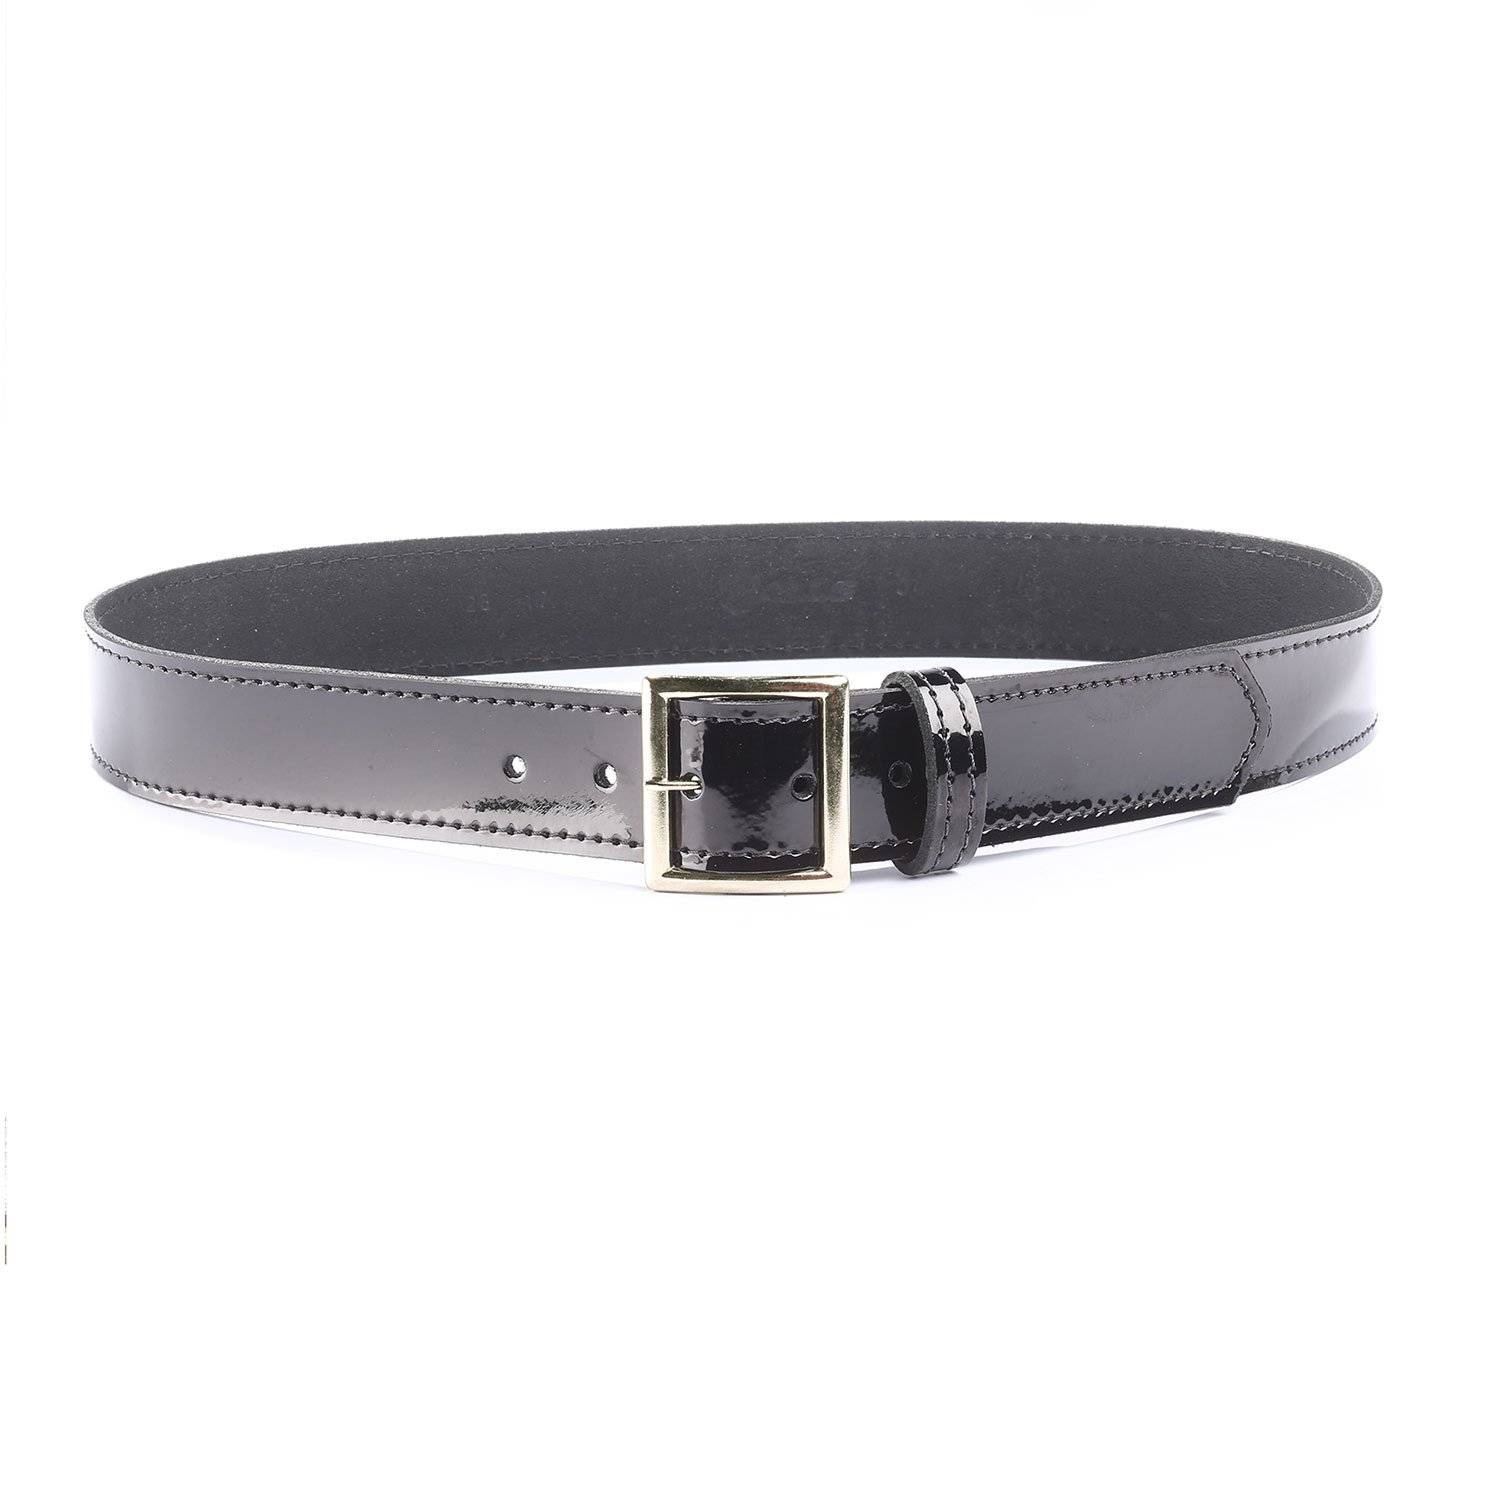 Galls Premium Leather Uniform Belt